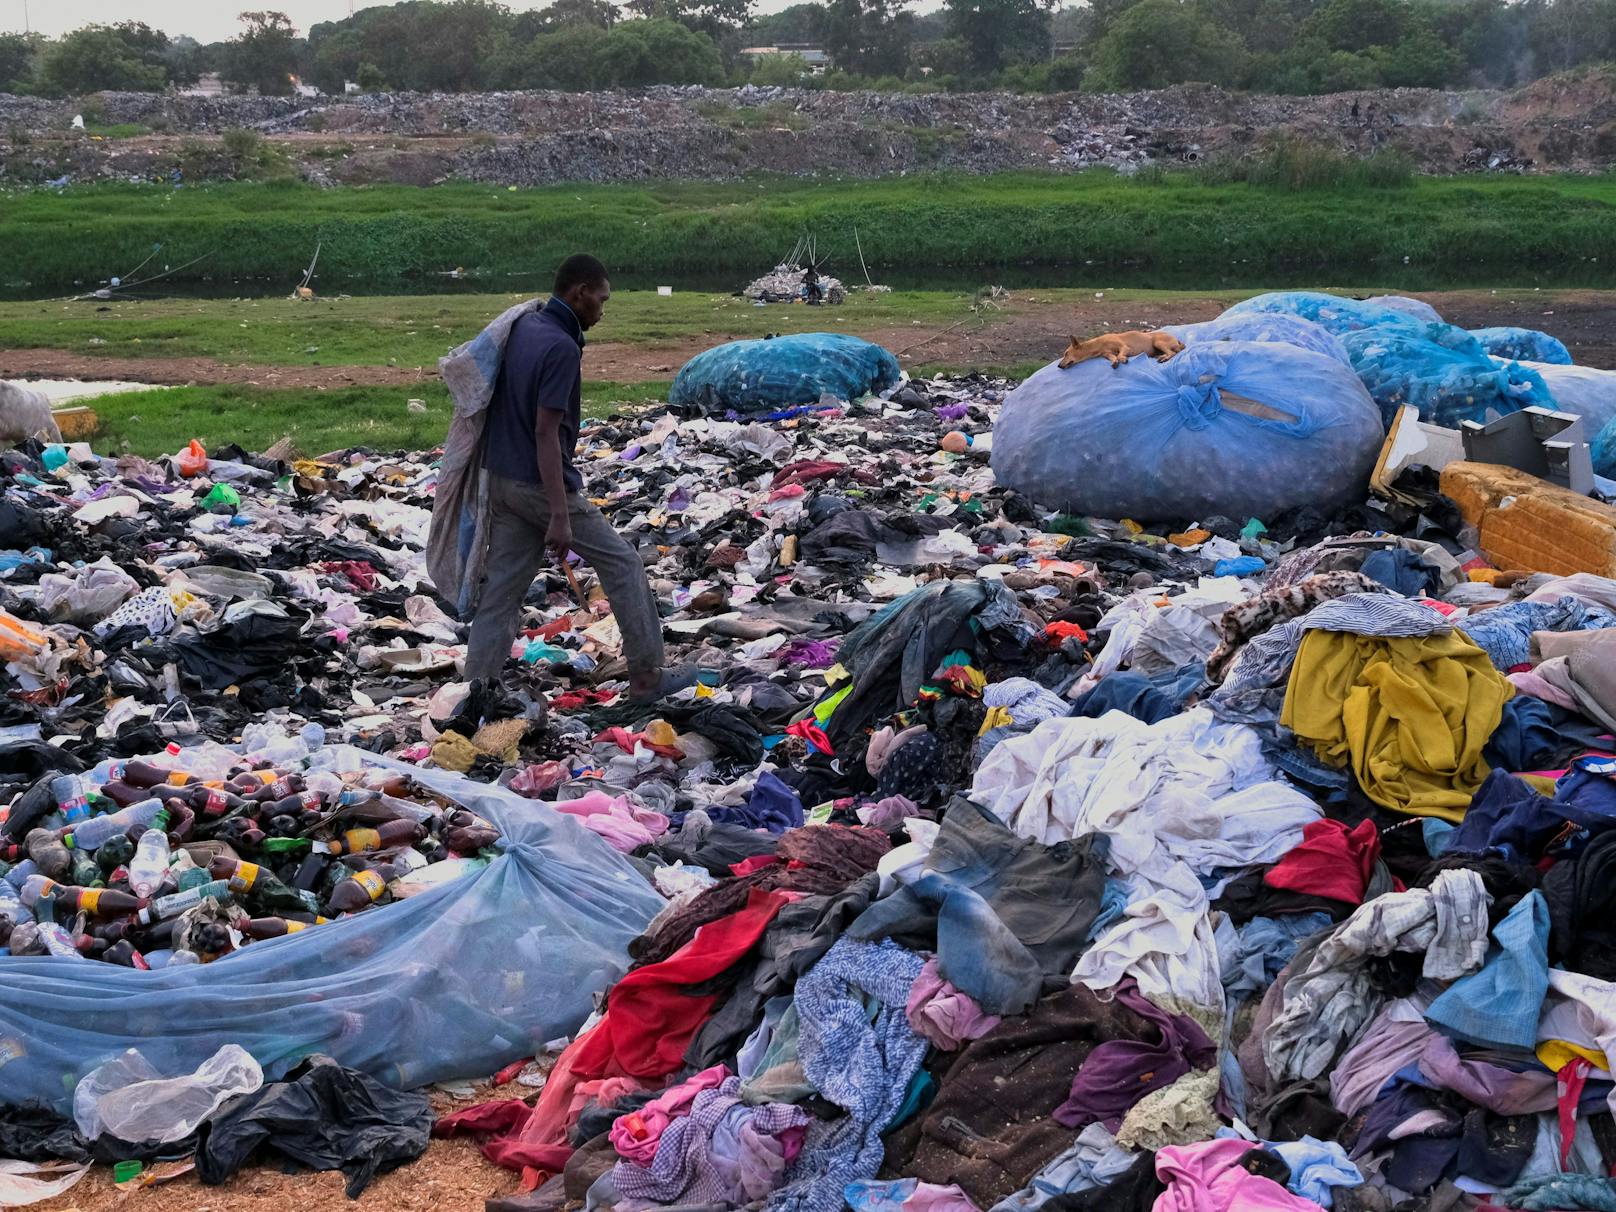 Hunderte Tonnen Second-Hand-Kleidung landen täglich allein in Ghana. Doch viel davon wandert in den Müll. Die Billigware ist längst zu einer Gefahr für Natur und Mensch geworden.